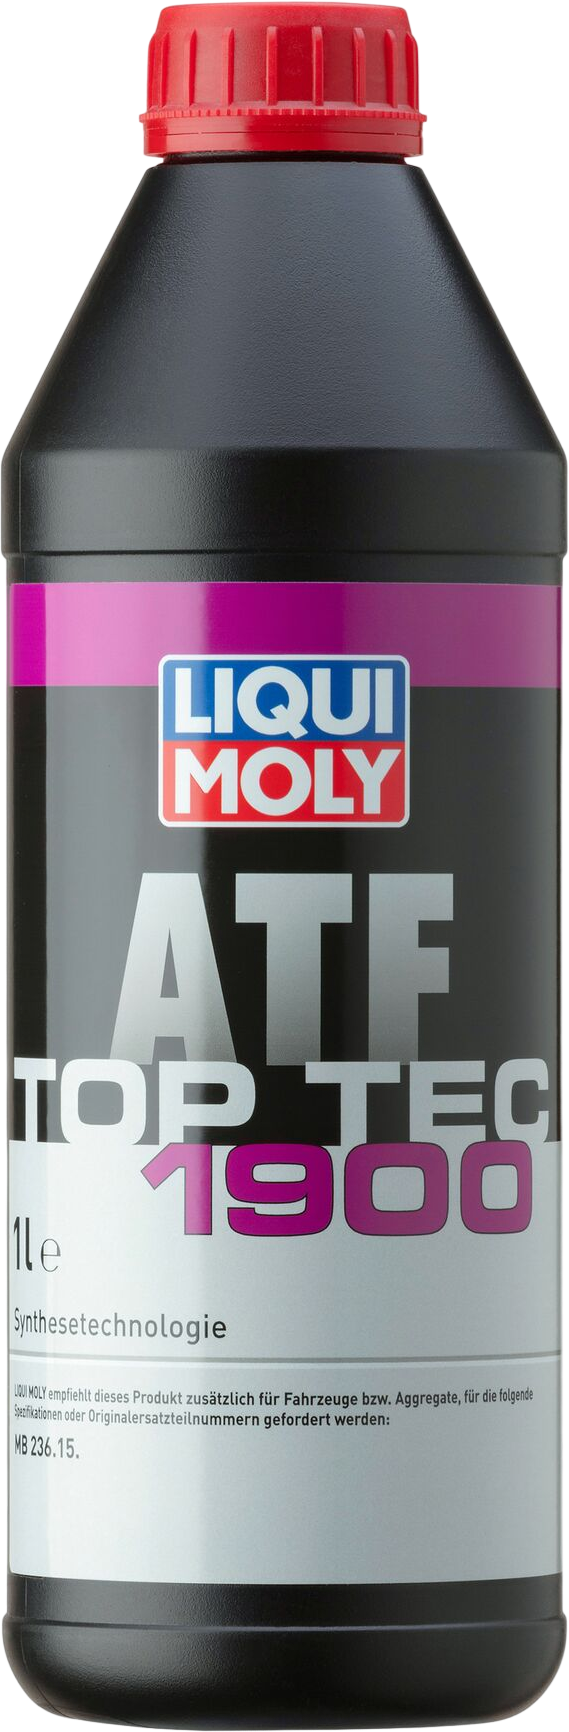 Liqui Moly Top Tec ATF 1900, 6 x 1 lt detail 2